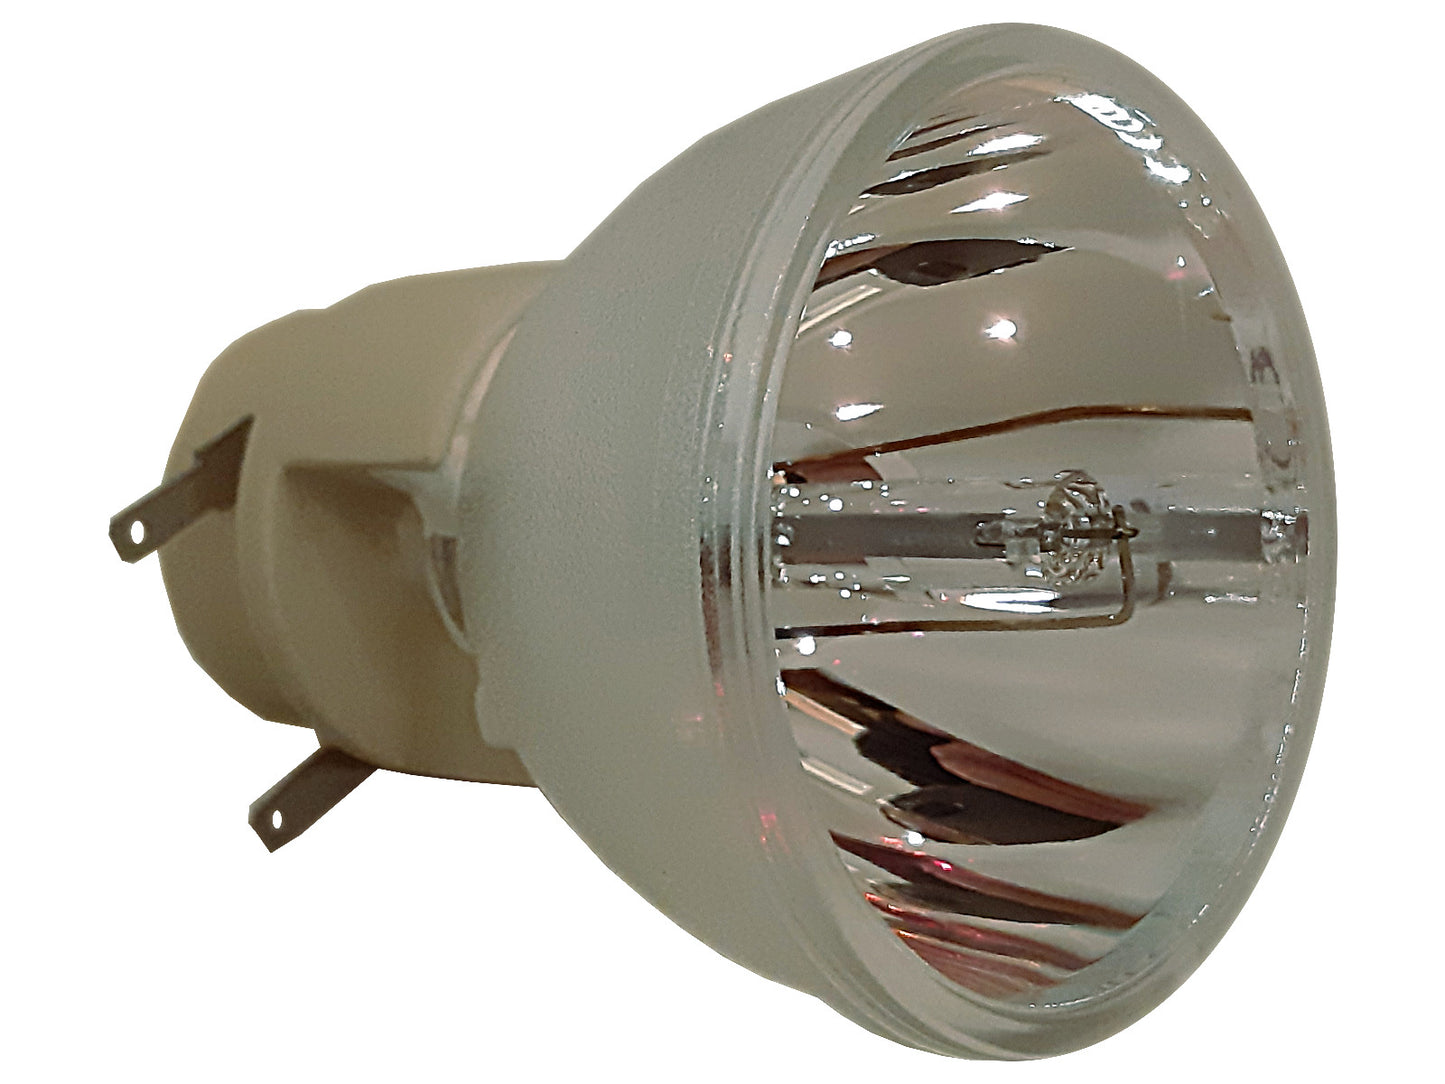 OSRAM Ersatzlampe P-VIP 210/0.8 E20.7 | Beamerlampe für diverse Projektoren - Bild 1